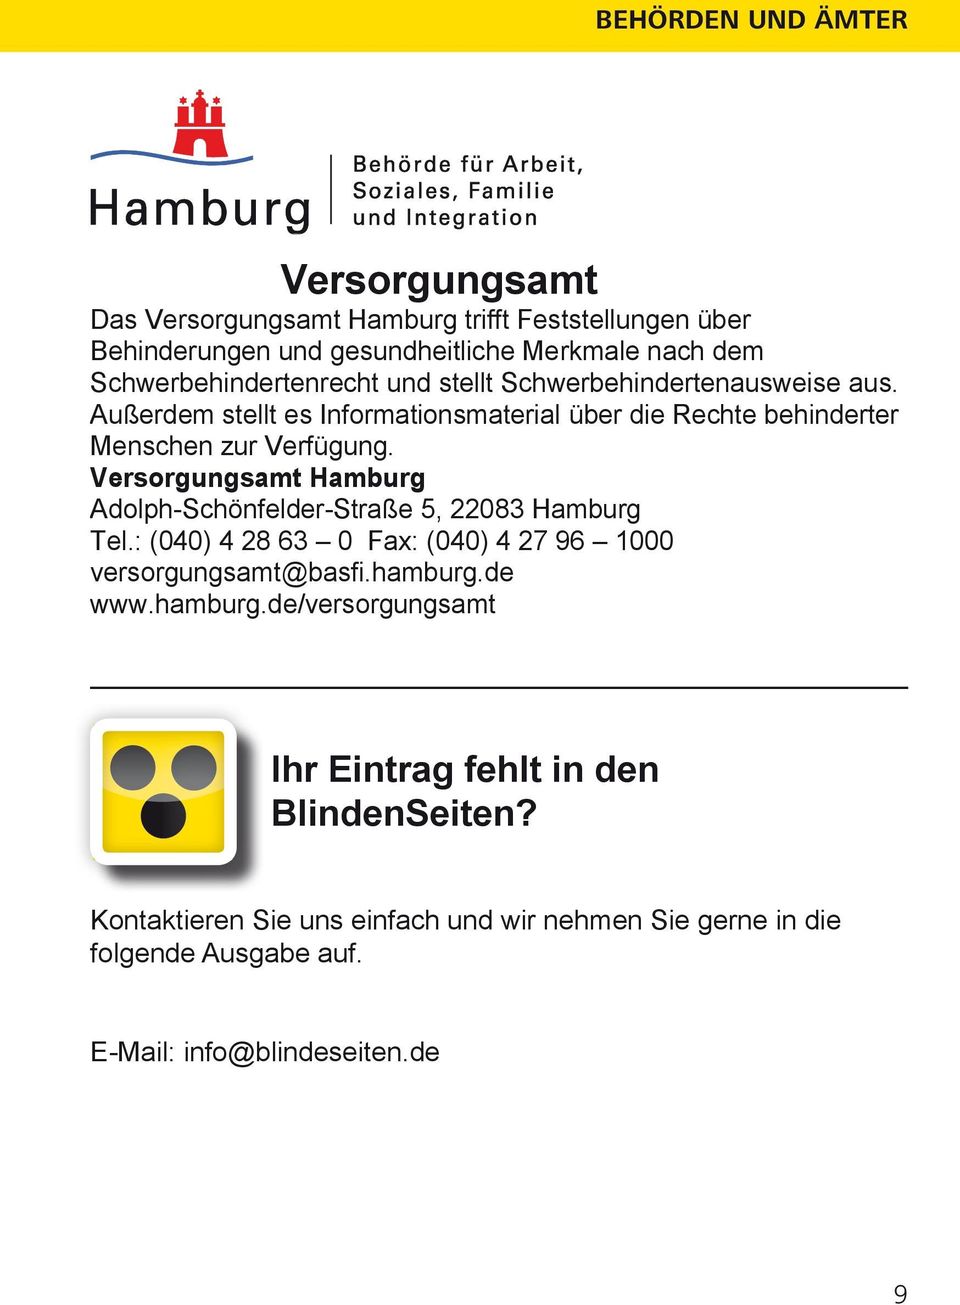 Versorgungsamt Hamburg Adolph-Schönfelder-Straße 5, 22083 Hamburg Tel.: (040) 4 28 63 0 Fax: (040) 4 27 96 1000 versorgungsamt@basfi.hamburg.